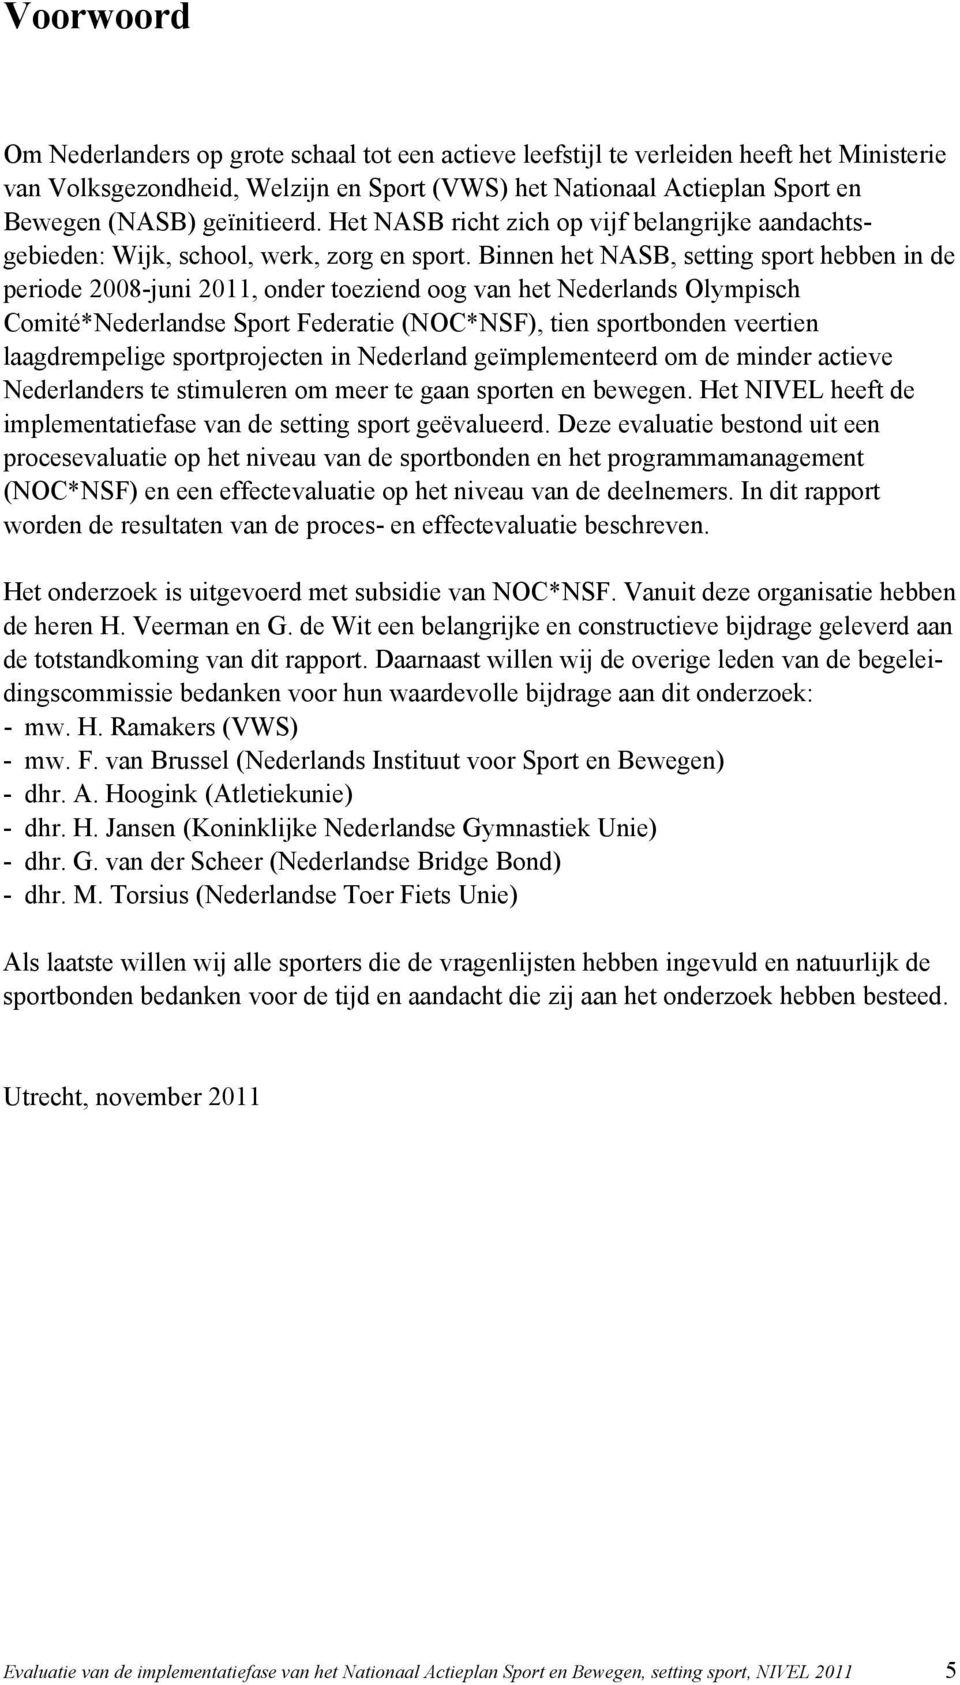 Binnen het NASB, setting sport hebben in de periode 2008-juni 2011, onder toeziend oog van het Nederlands Olympisch Comité*Nederlandse Sport Federatie (NOC*NSF), tien sportbonden veertien